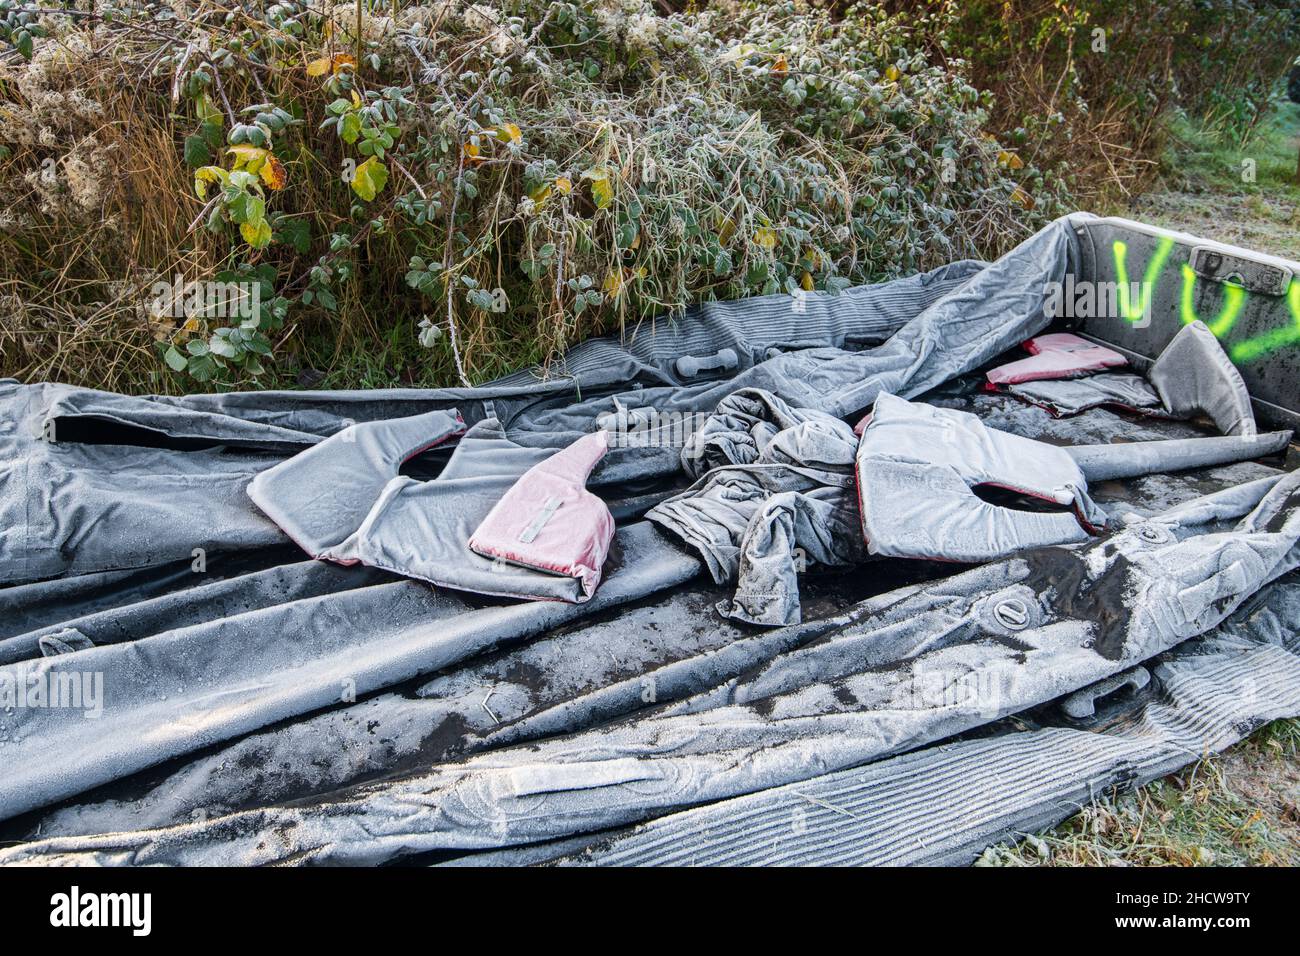 Ambleteuse, France - 22 décembre 2021 : bateau gonflable et gilet de sauvetage abandonnés par les migrants souhaitant traverser la Manche. Banque D'Images